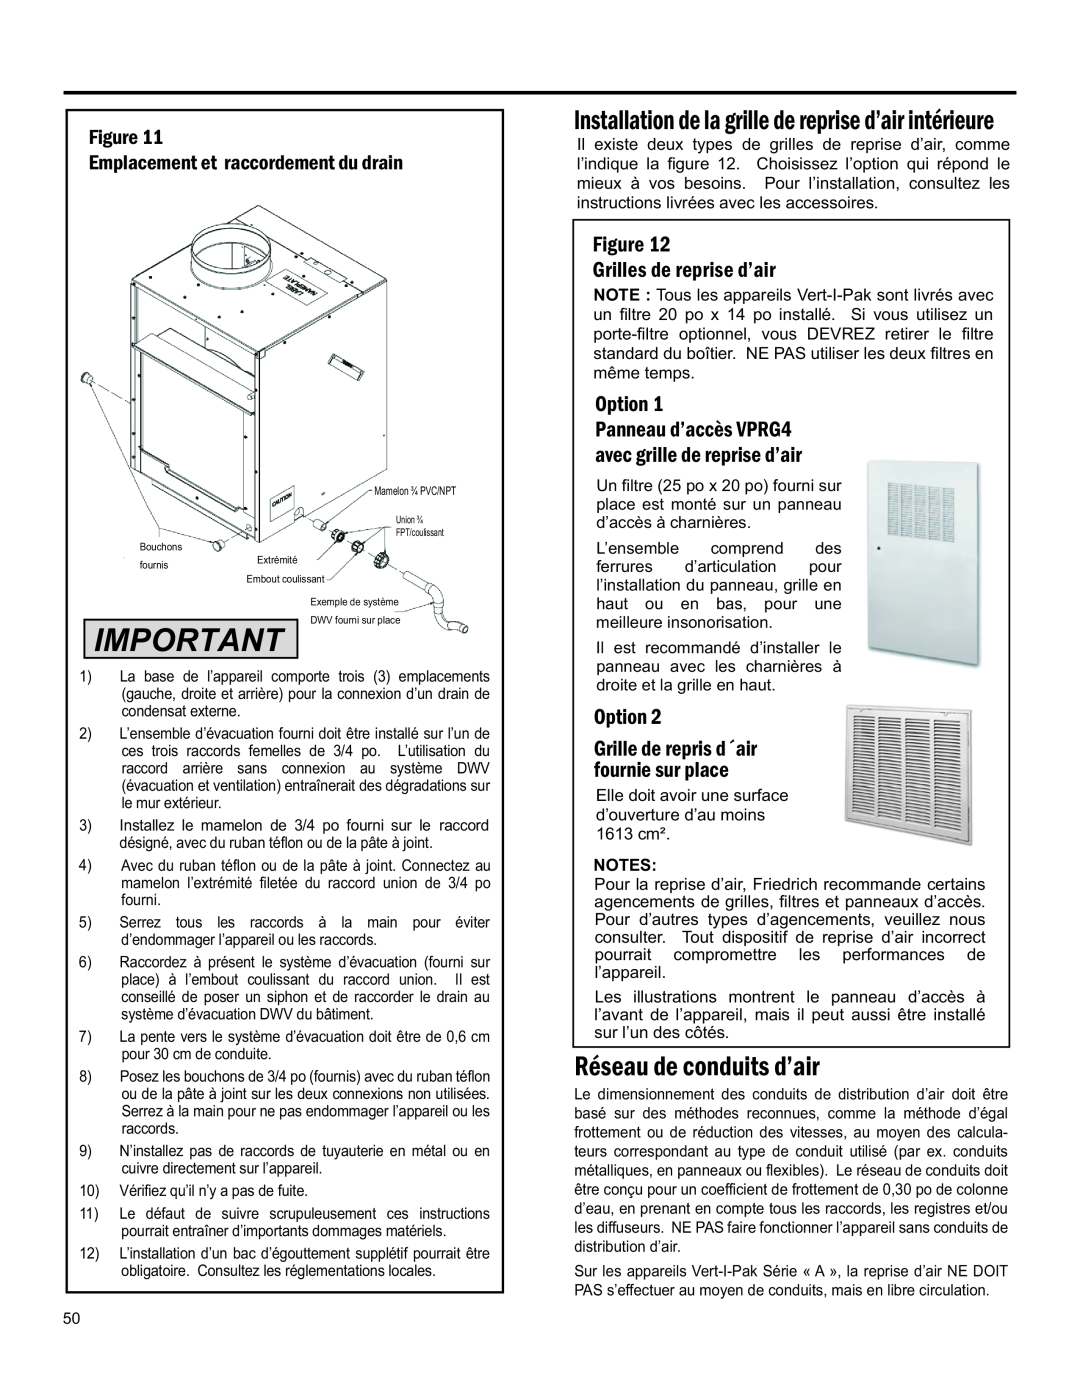 Friedrich 920-075-13 (1-11) operation manual Réseau De Conduits D’Air, Notes 